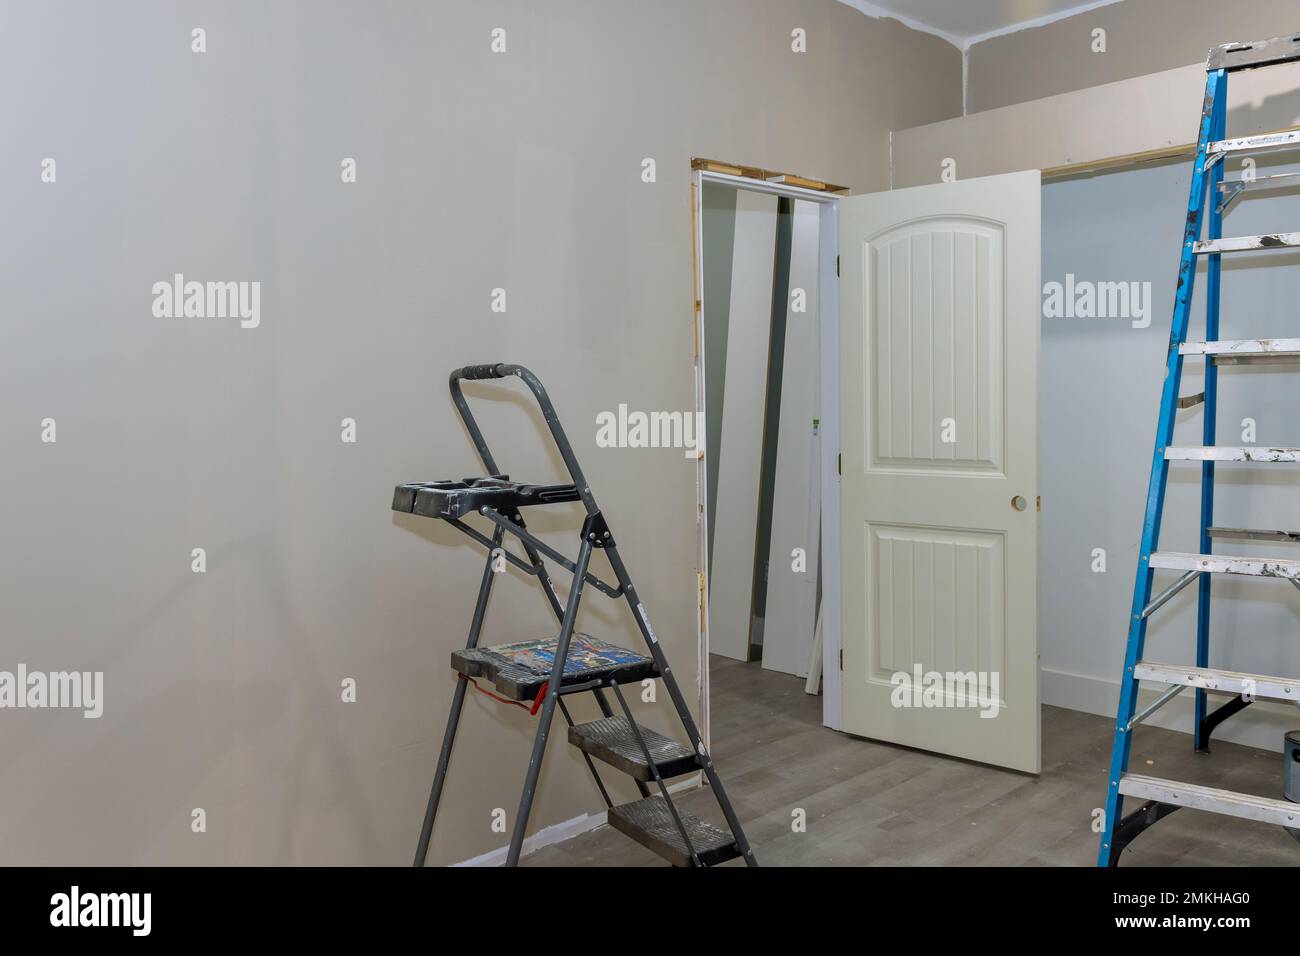 Die Wände wurden in einem leeren Raum gestrichen, mit Malerausrüstung und einer Treppenleiter neben dem leeren Raum Stockfoto